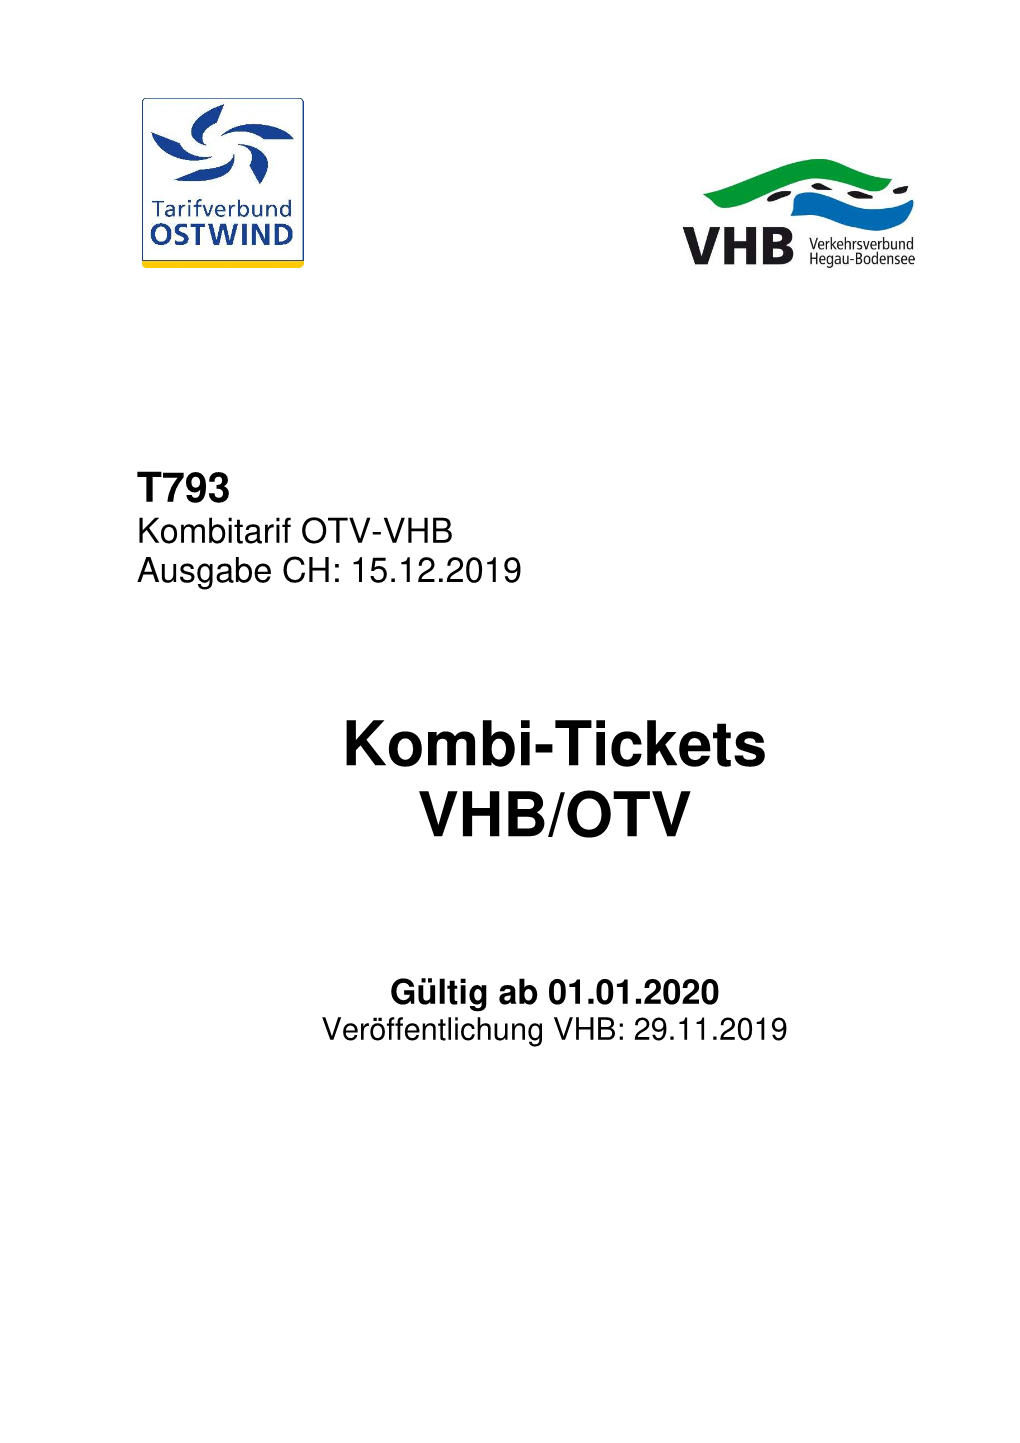 Kombi-Tickets VHB/OTV, Die Innerhalb VHB Ausschließlich in Der Cityzone Konstanz Gültig Sind, Sind Am SBB-Schalter Im Bahnhof Konstanz Erhältlich (CHF-Preise)